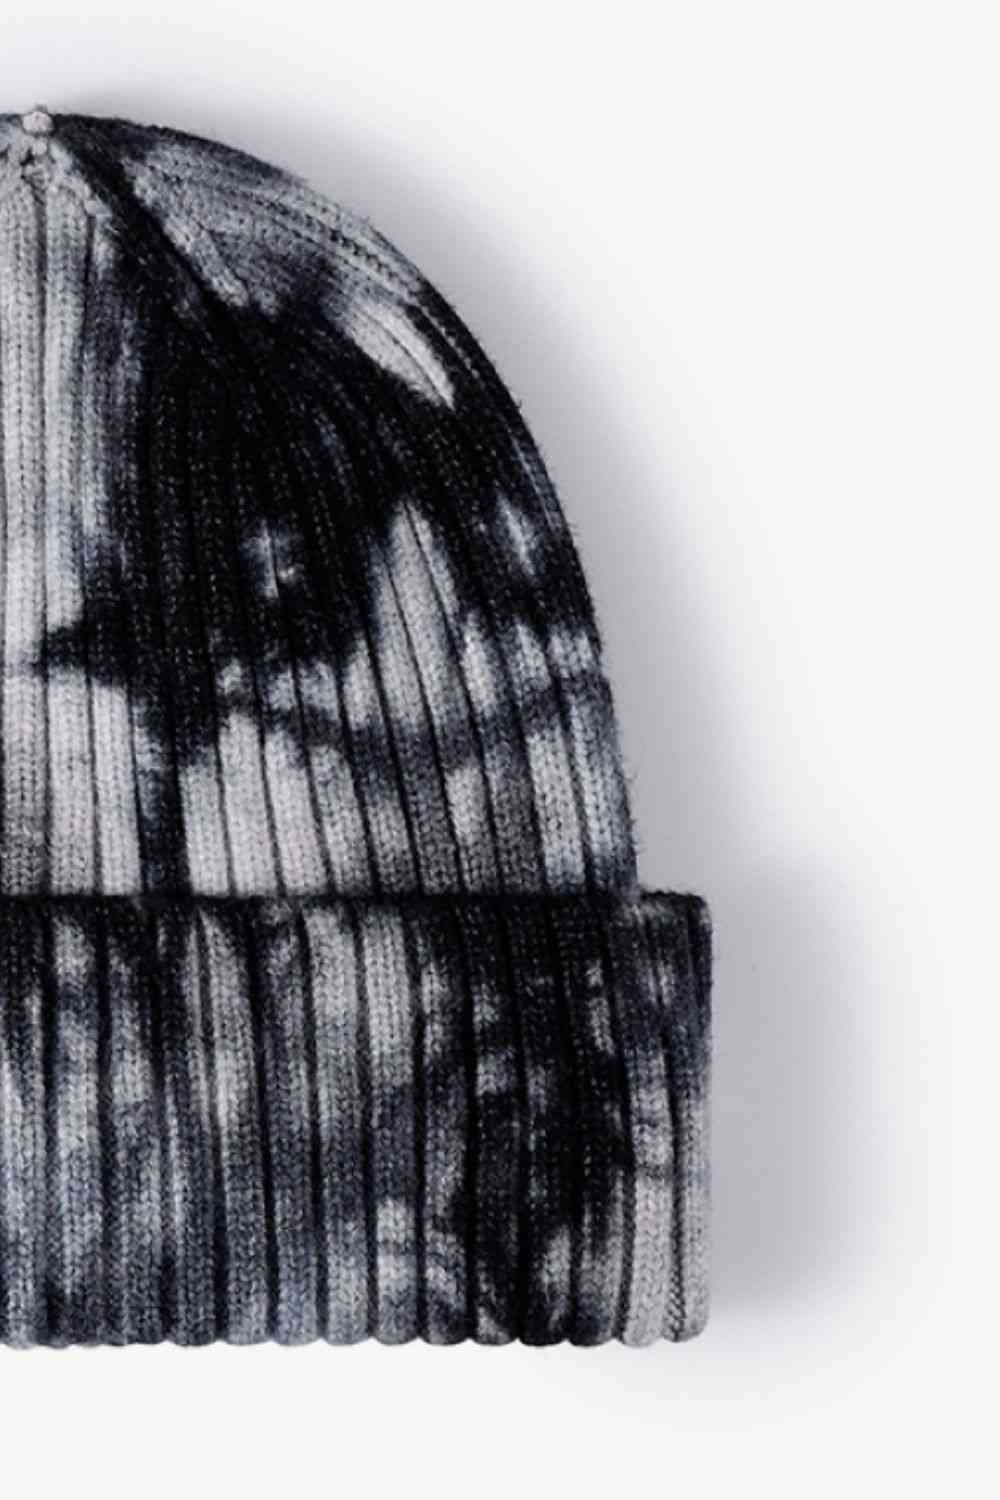 Grunge Tie-Dye Ribbed Cuffed Beanie - Goth Cloth Co.100100614090976